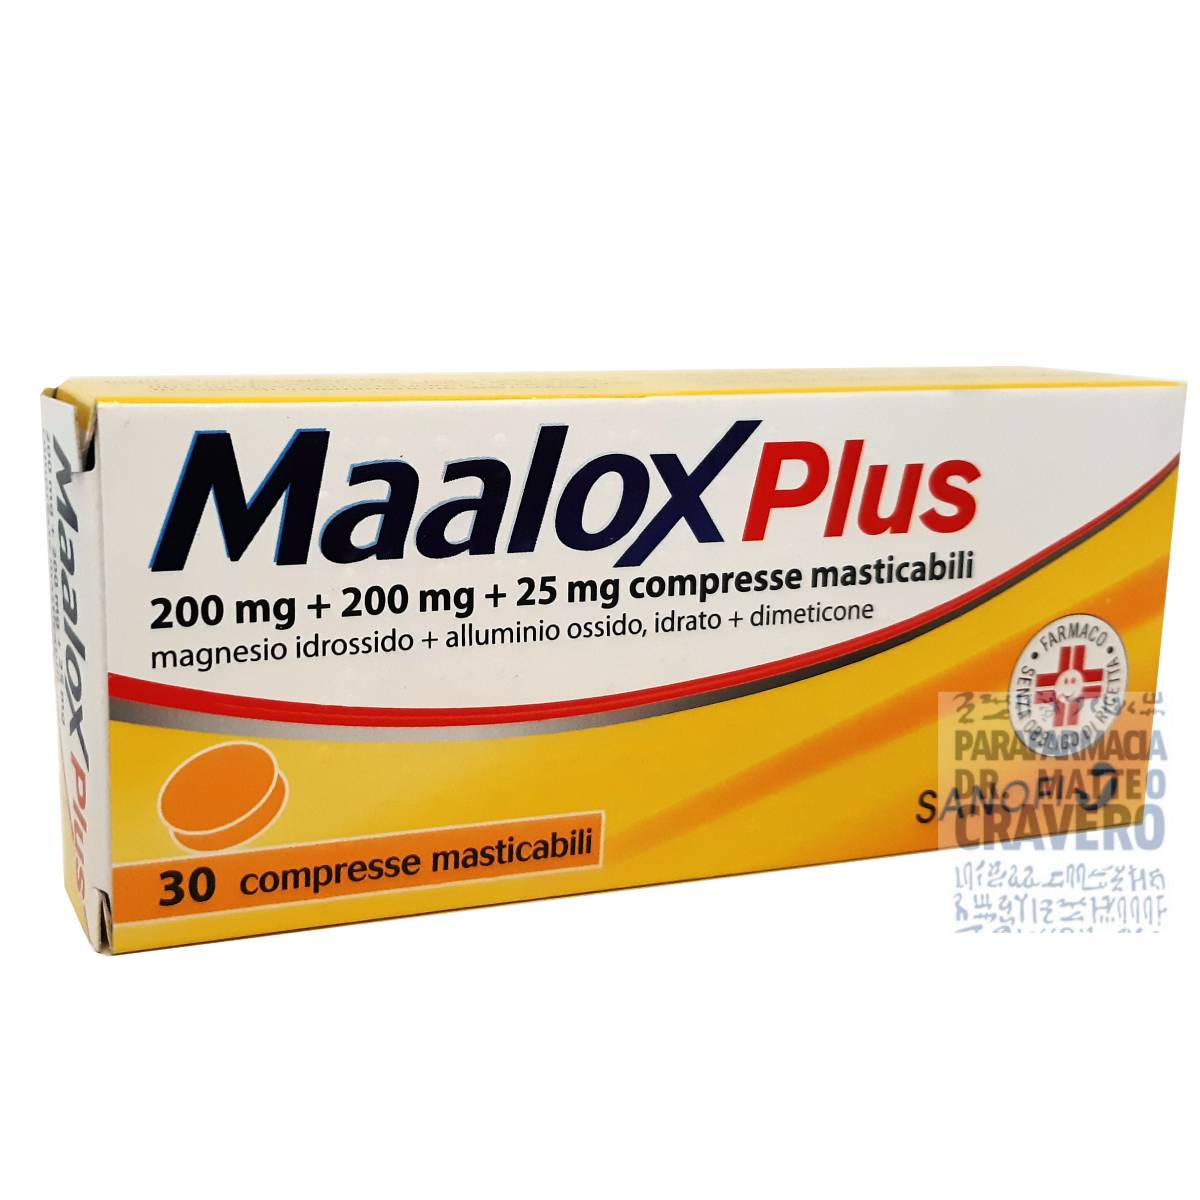 Maalox Plus 30 Compresse Masticabili € 8,07 prezzo Parafarmacia Cravero